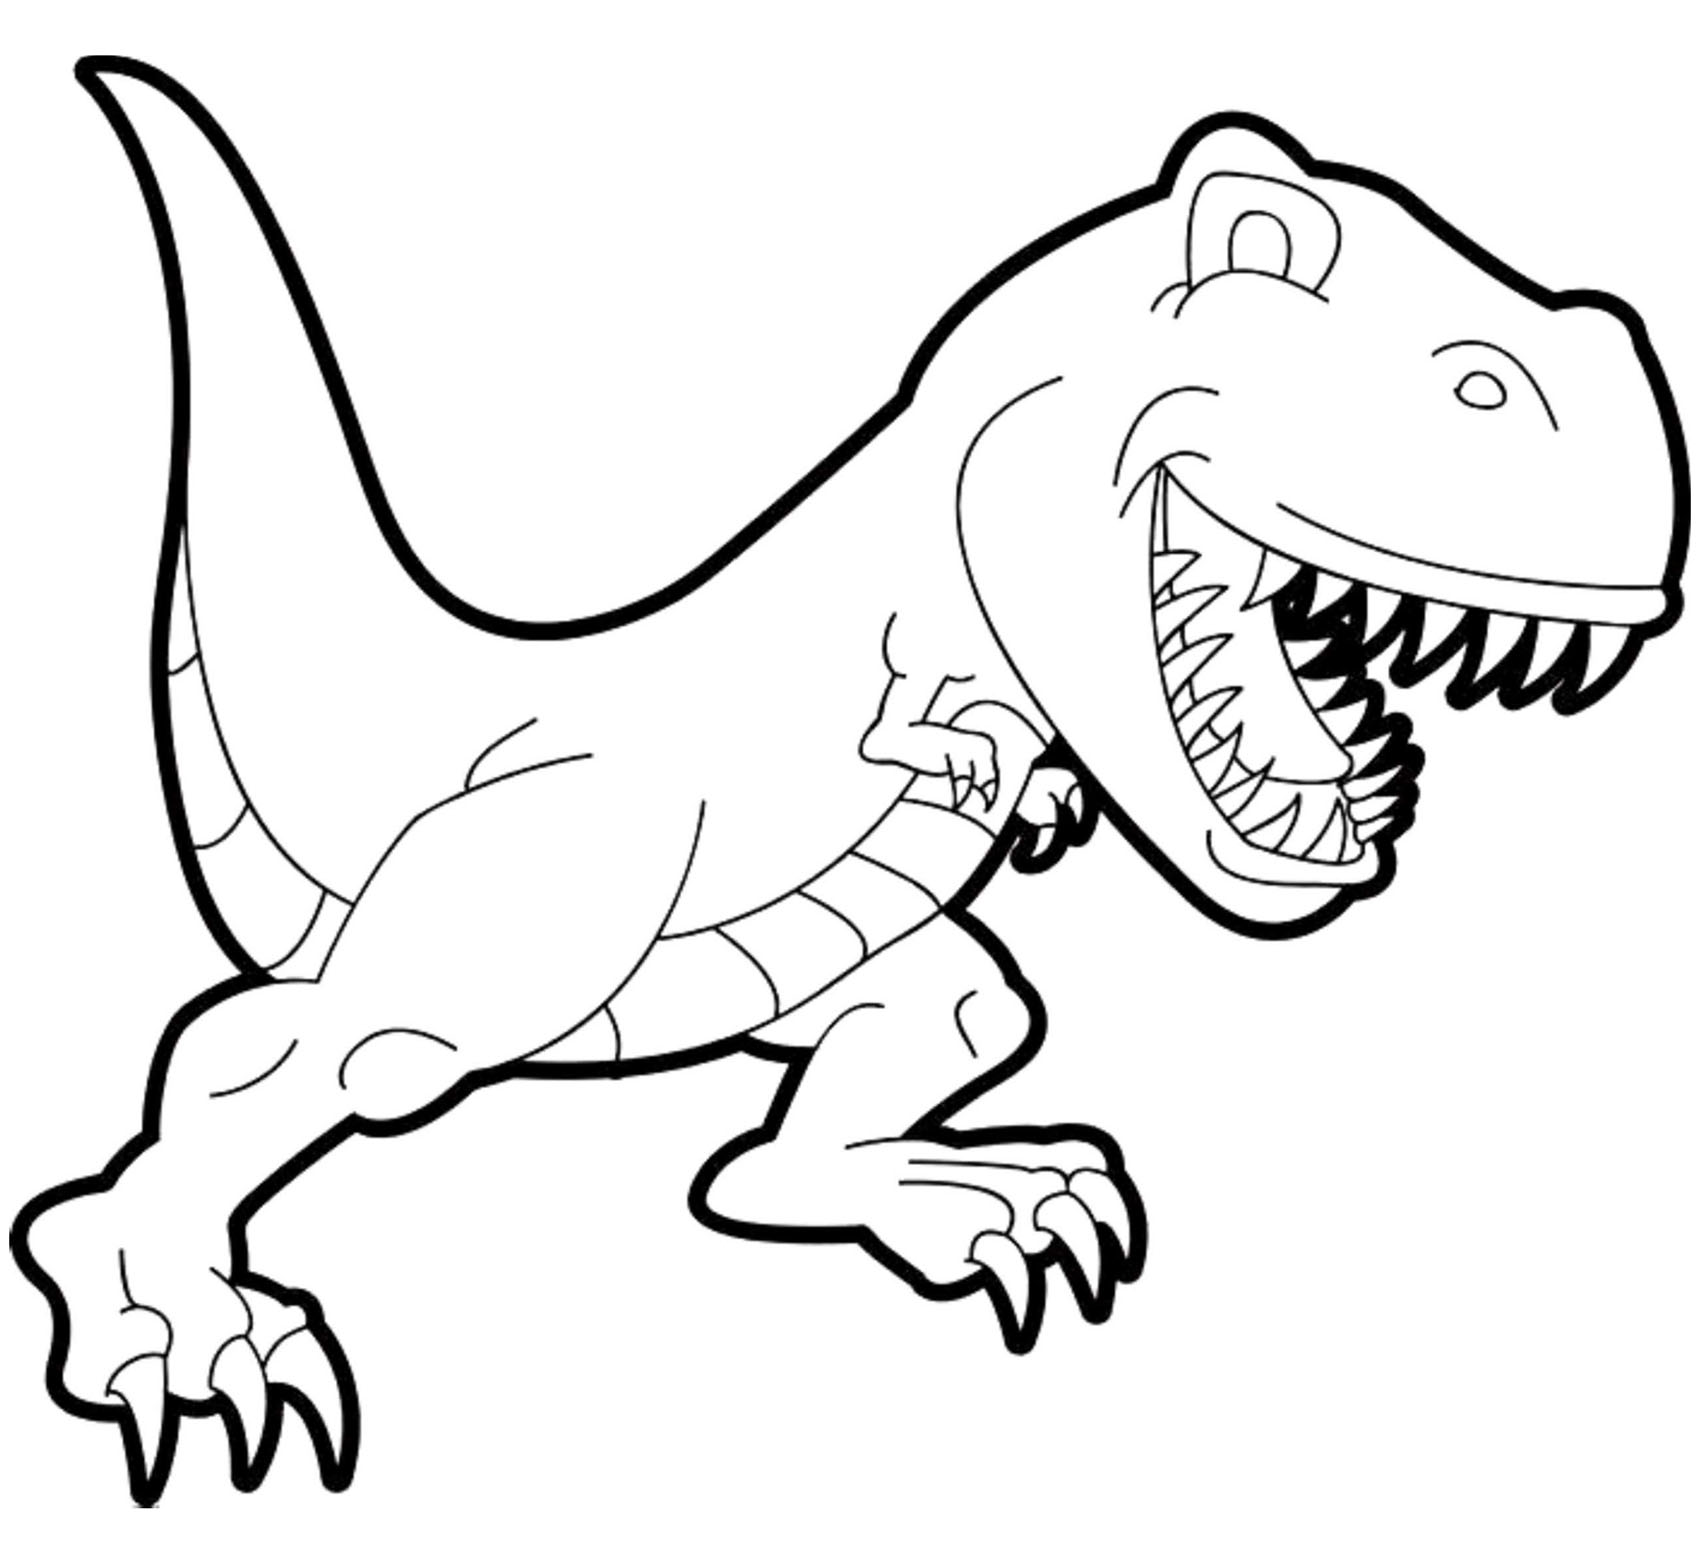 Ce gros T-rex attend votre coloriage !